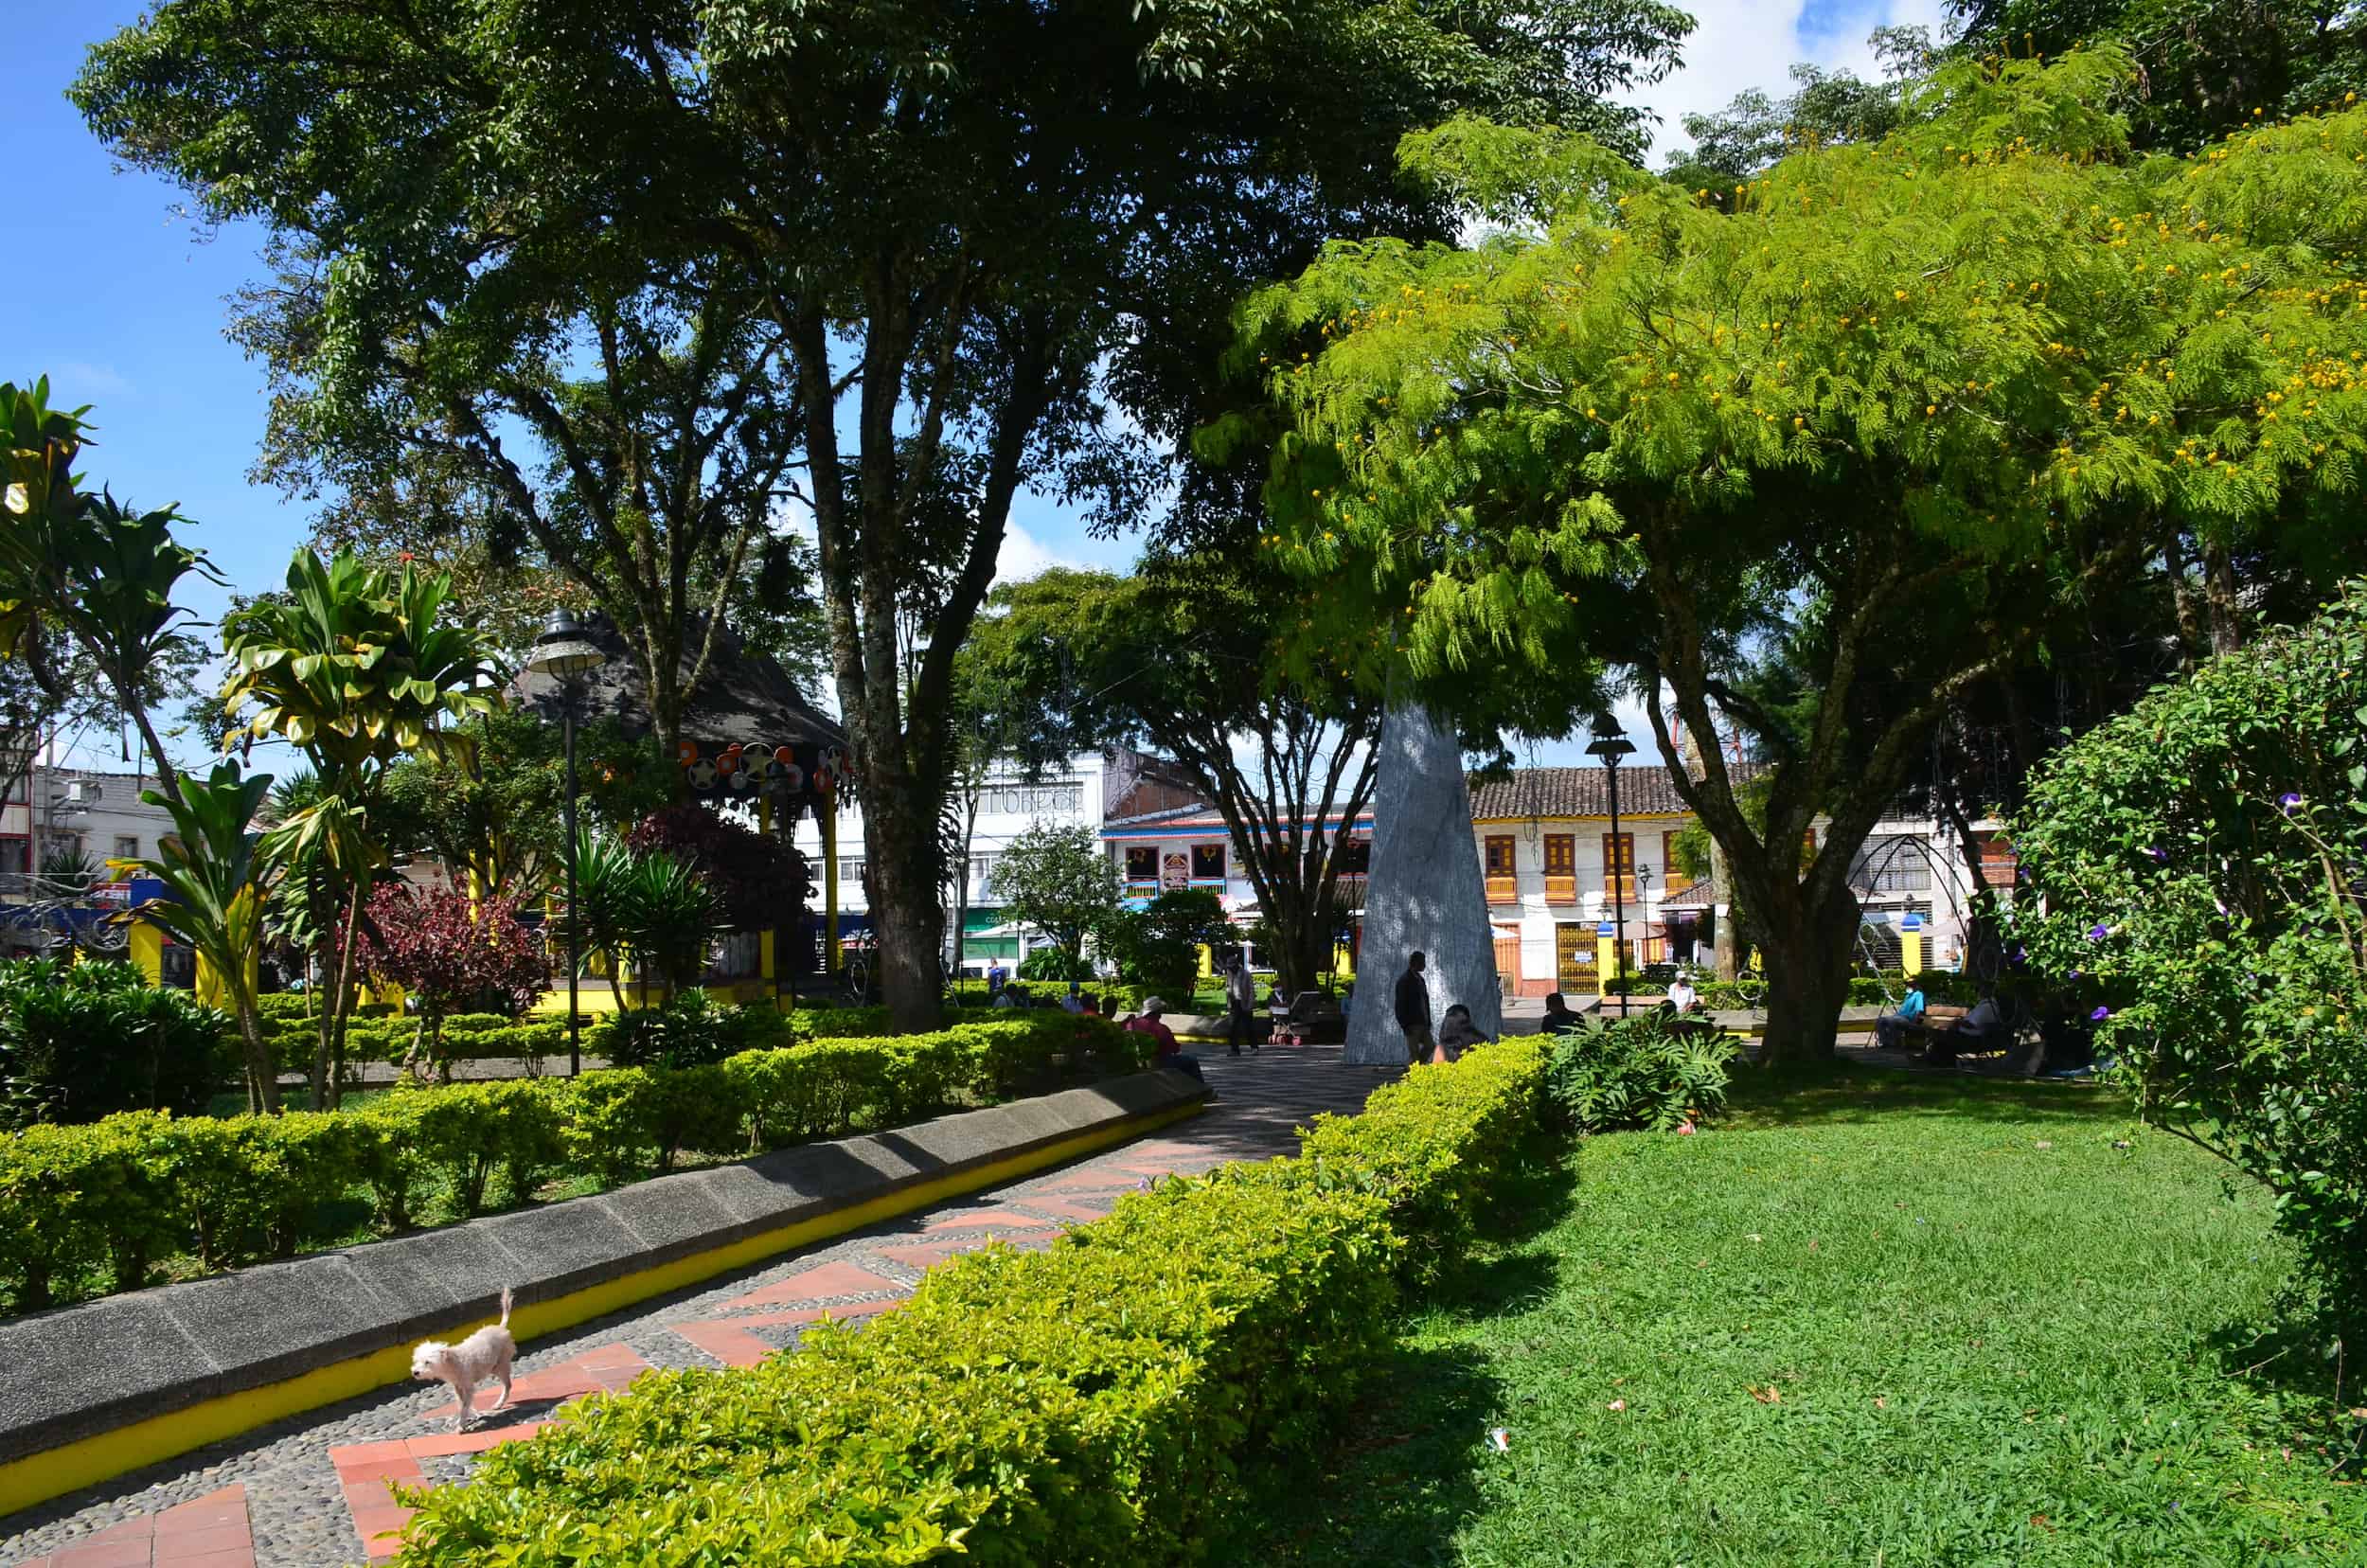 Plaza de La Concordia in Sevilla, Valle del Cauca, Colombia